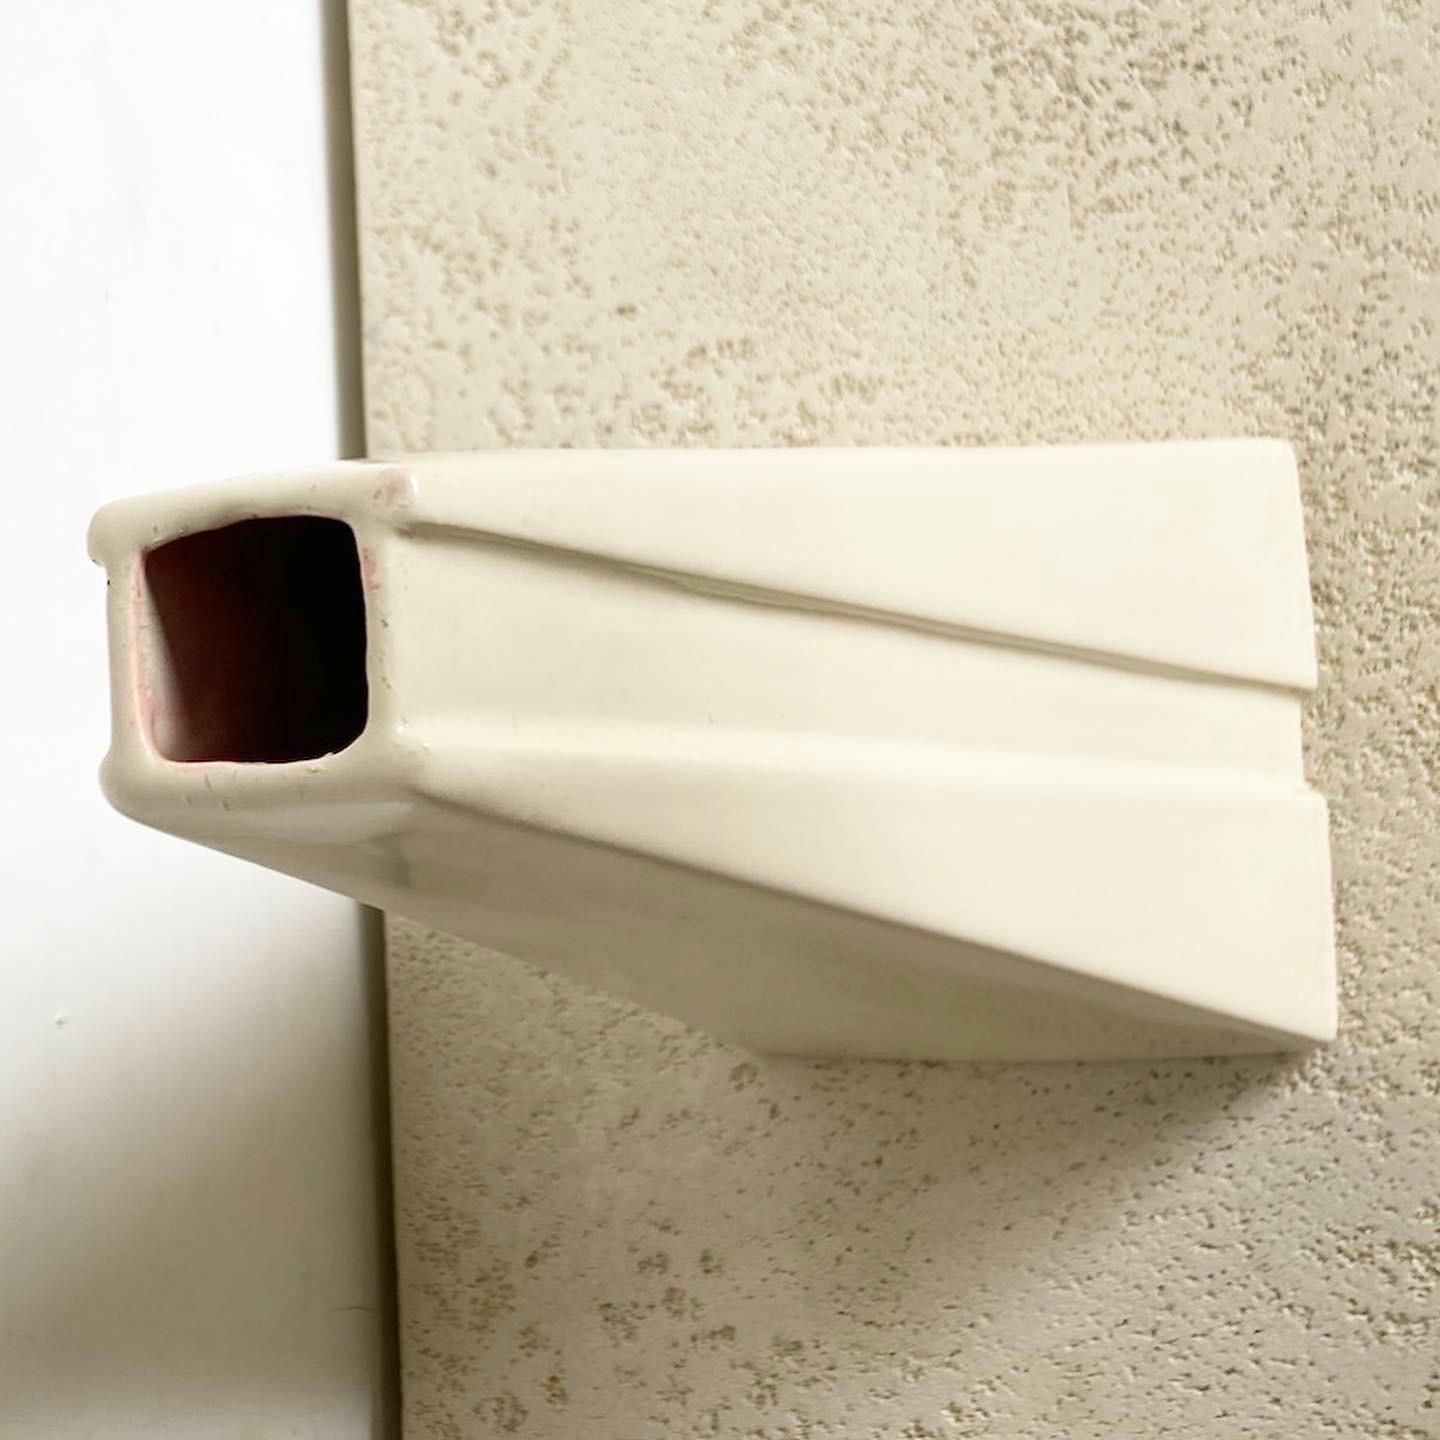 Voici le vase pyramidal Postmodern Cream de Haeger, un mélange unique de design géométrique et de tons neutres et doux. Non seulement il sert de vase fonctionnel pour les arrangements floraux, mais sa forme pyramidale en fait également une œuvre